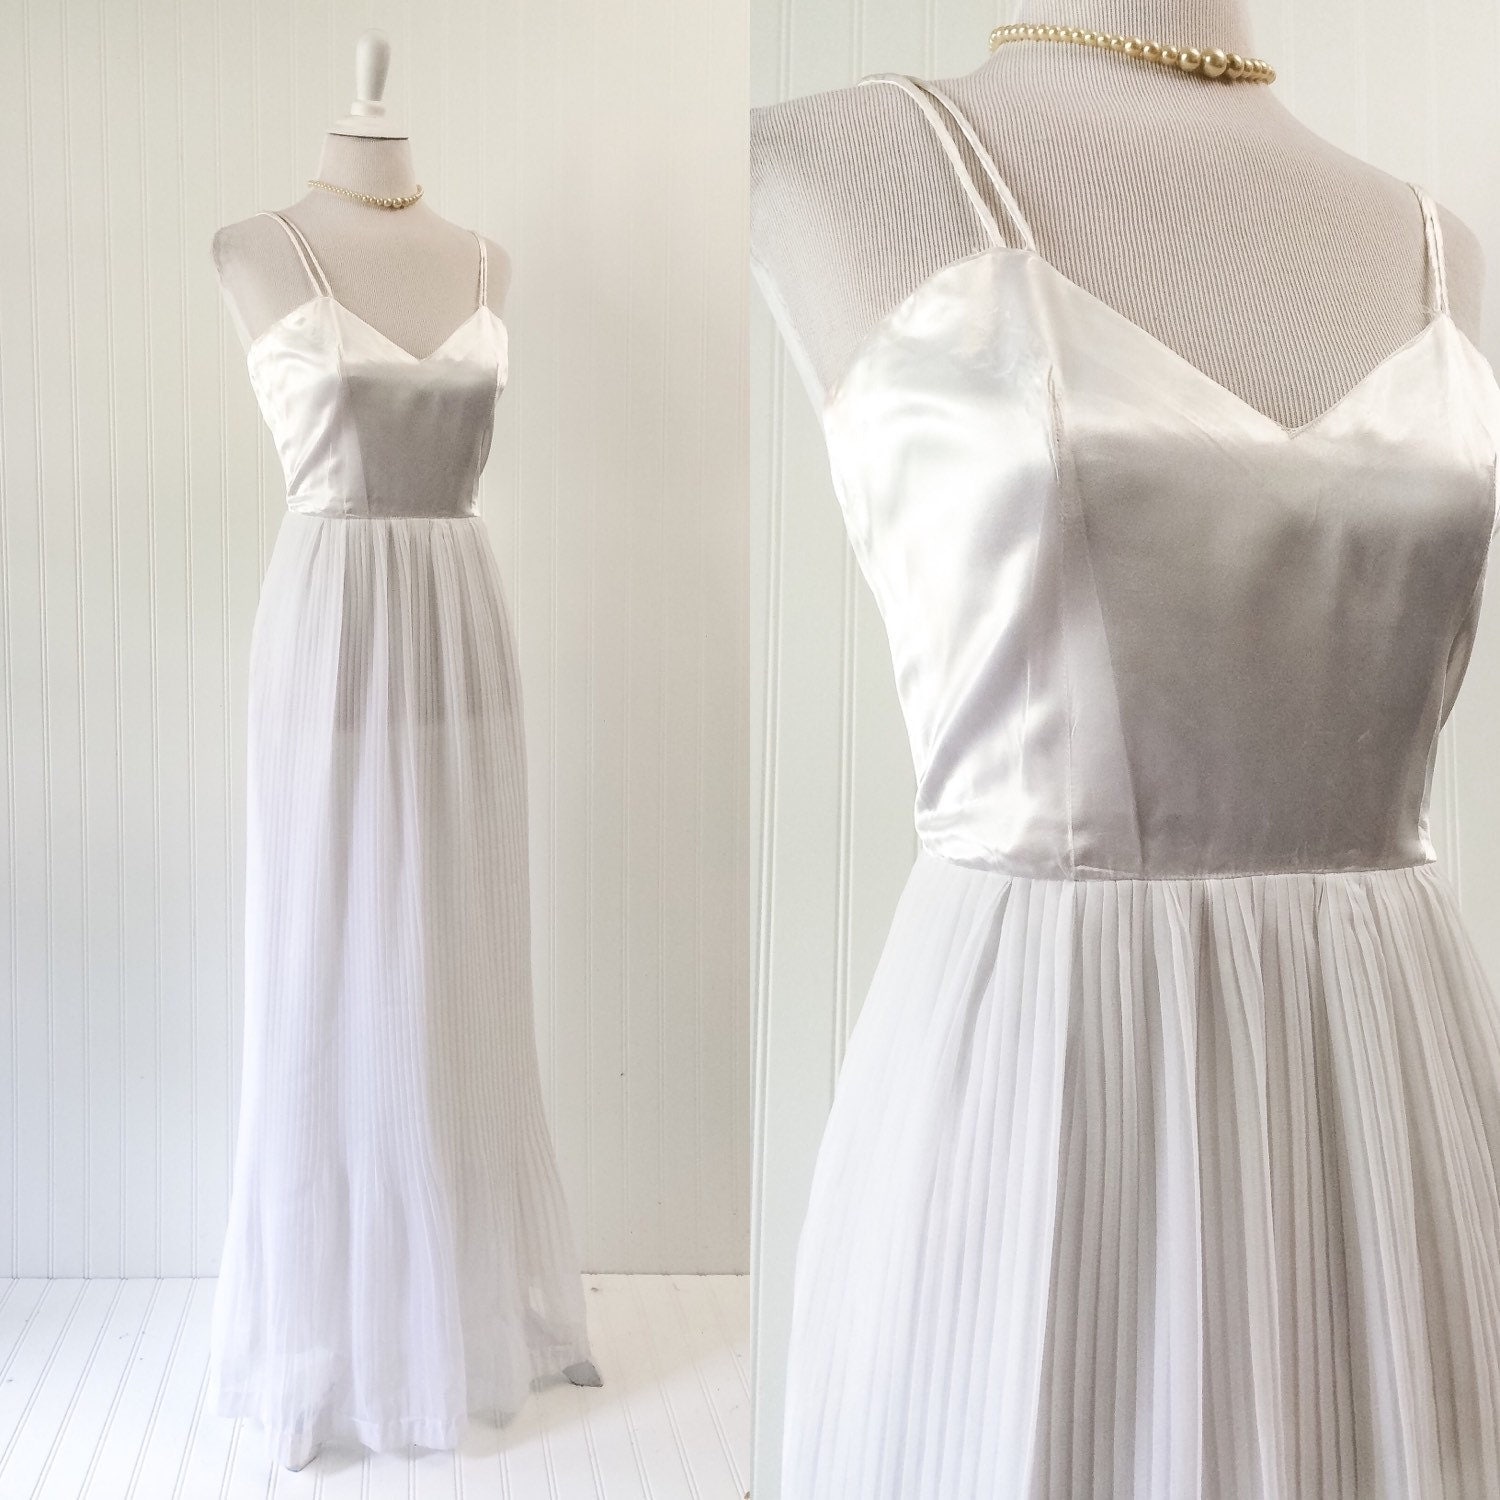 1960s vintage white satin & chiffon wedding maxi dress gown